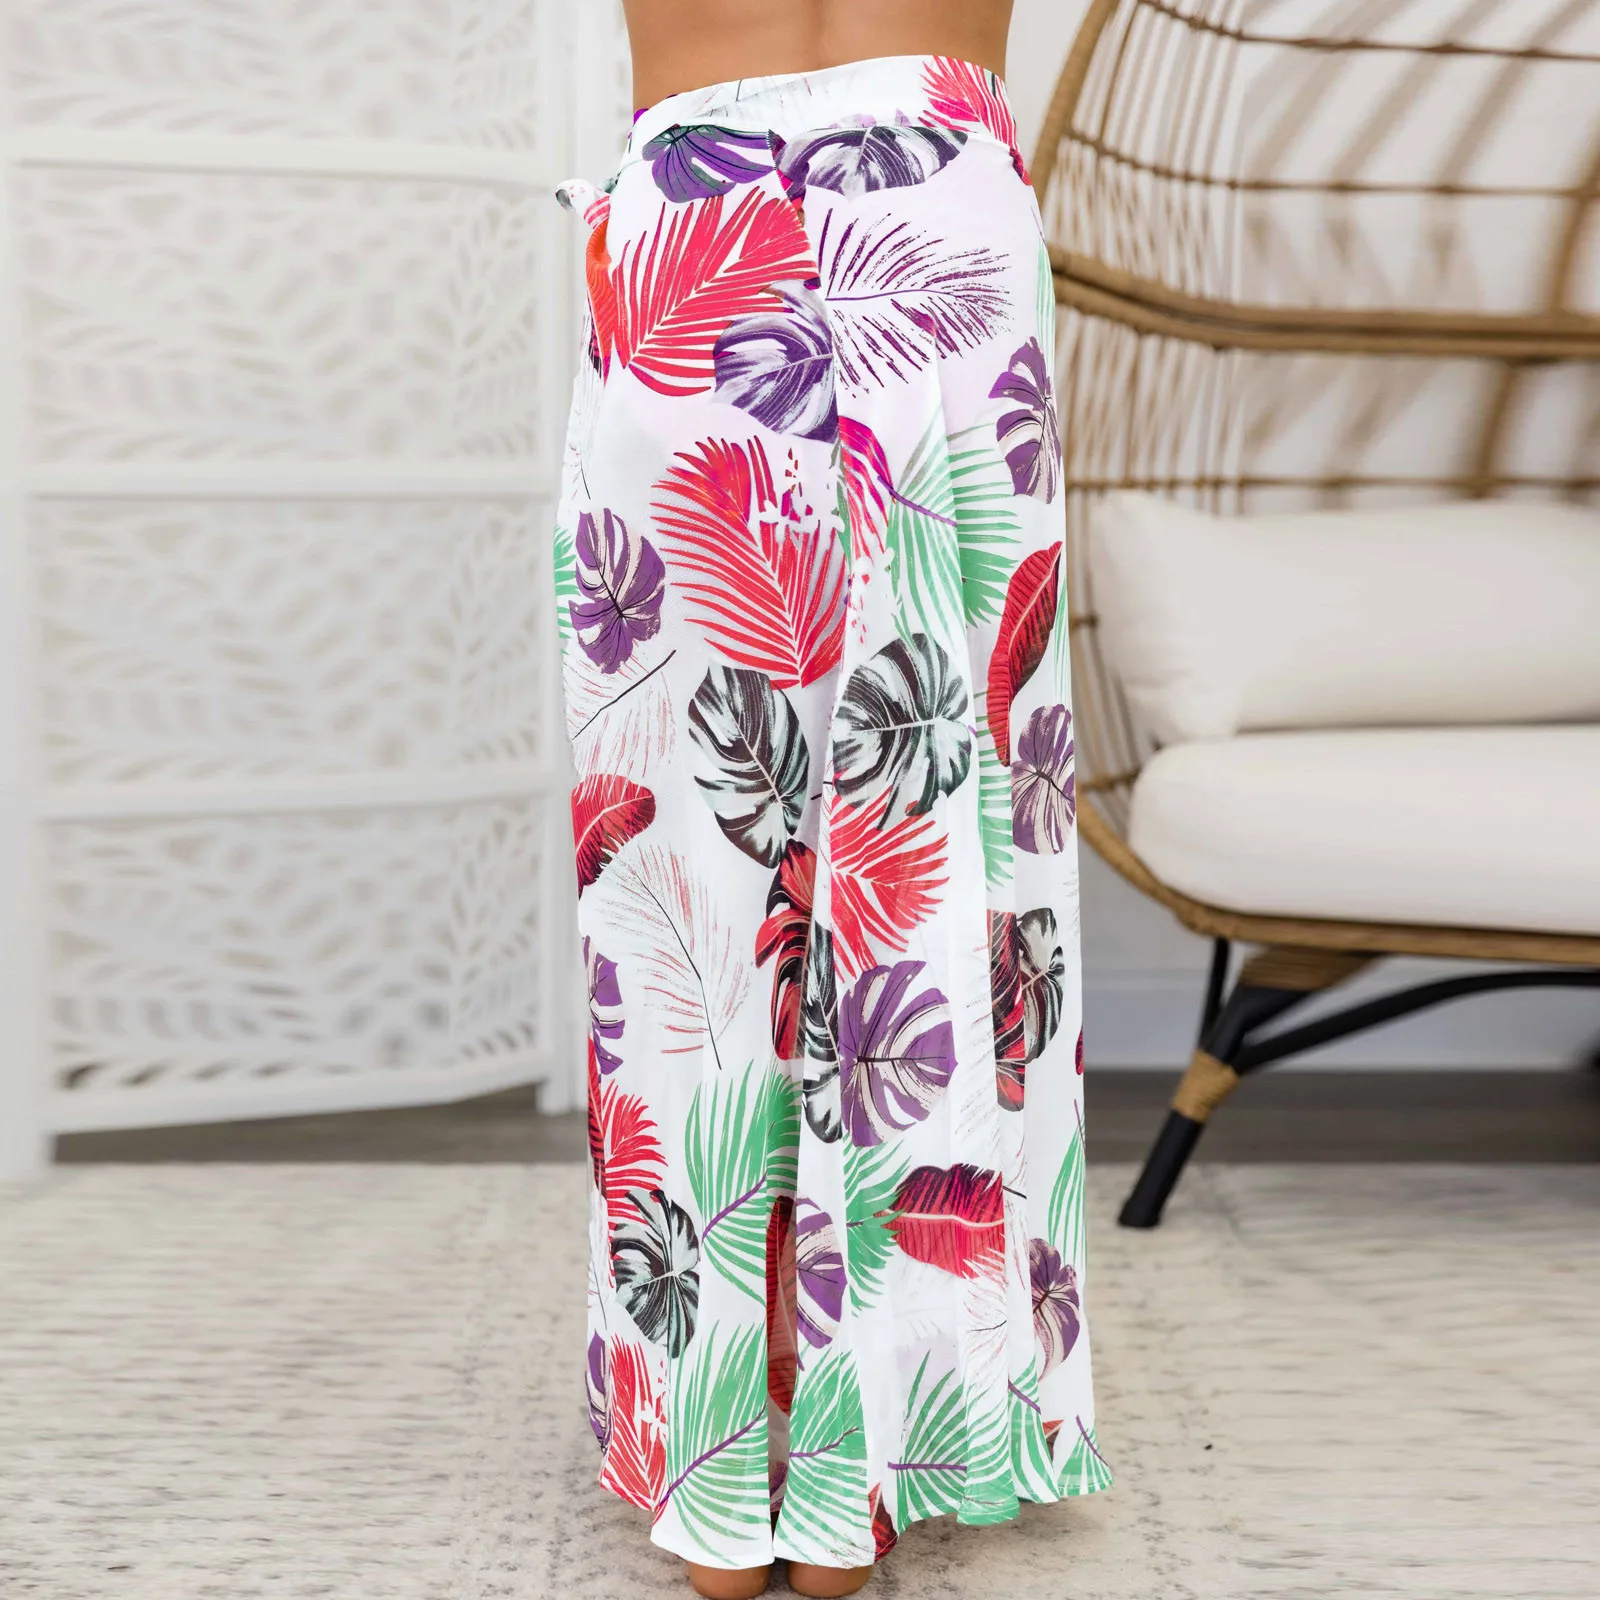 Summer Women Skirt Sexy High Waist Slim Shorts Beach Korean Skirt New Swimsuit Bikini Swimwear Cover-Ups Wrap skirts ÐœÐ¸Ð½Ð¸ ÑŽÐ±ÐºÐ¸